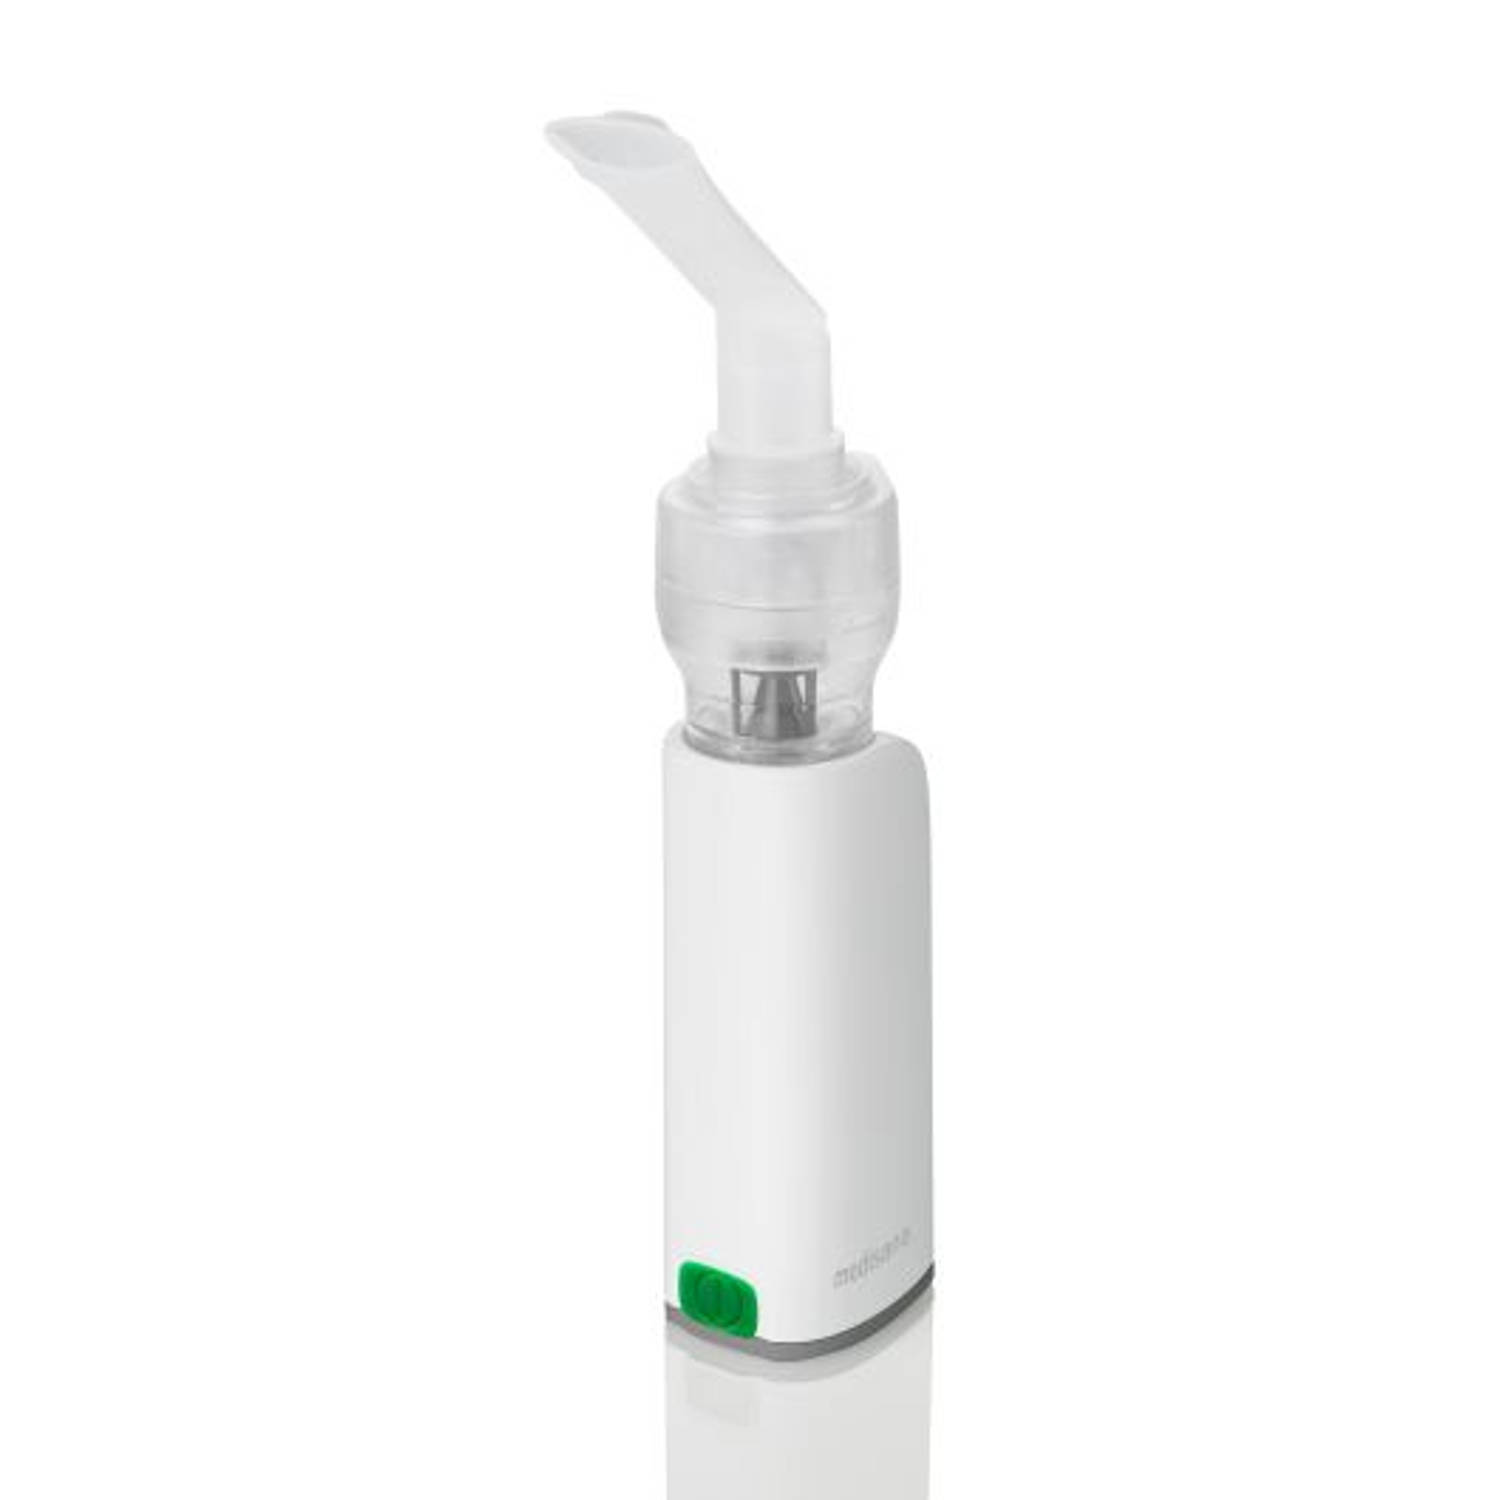 Medisana IN 530 Inhalator Met neusstuk, Met inhalatiemasker, Met mondstuk